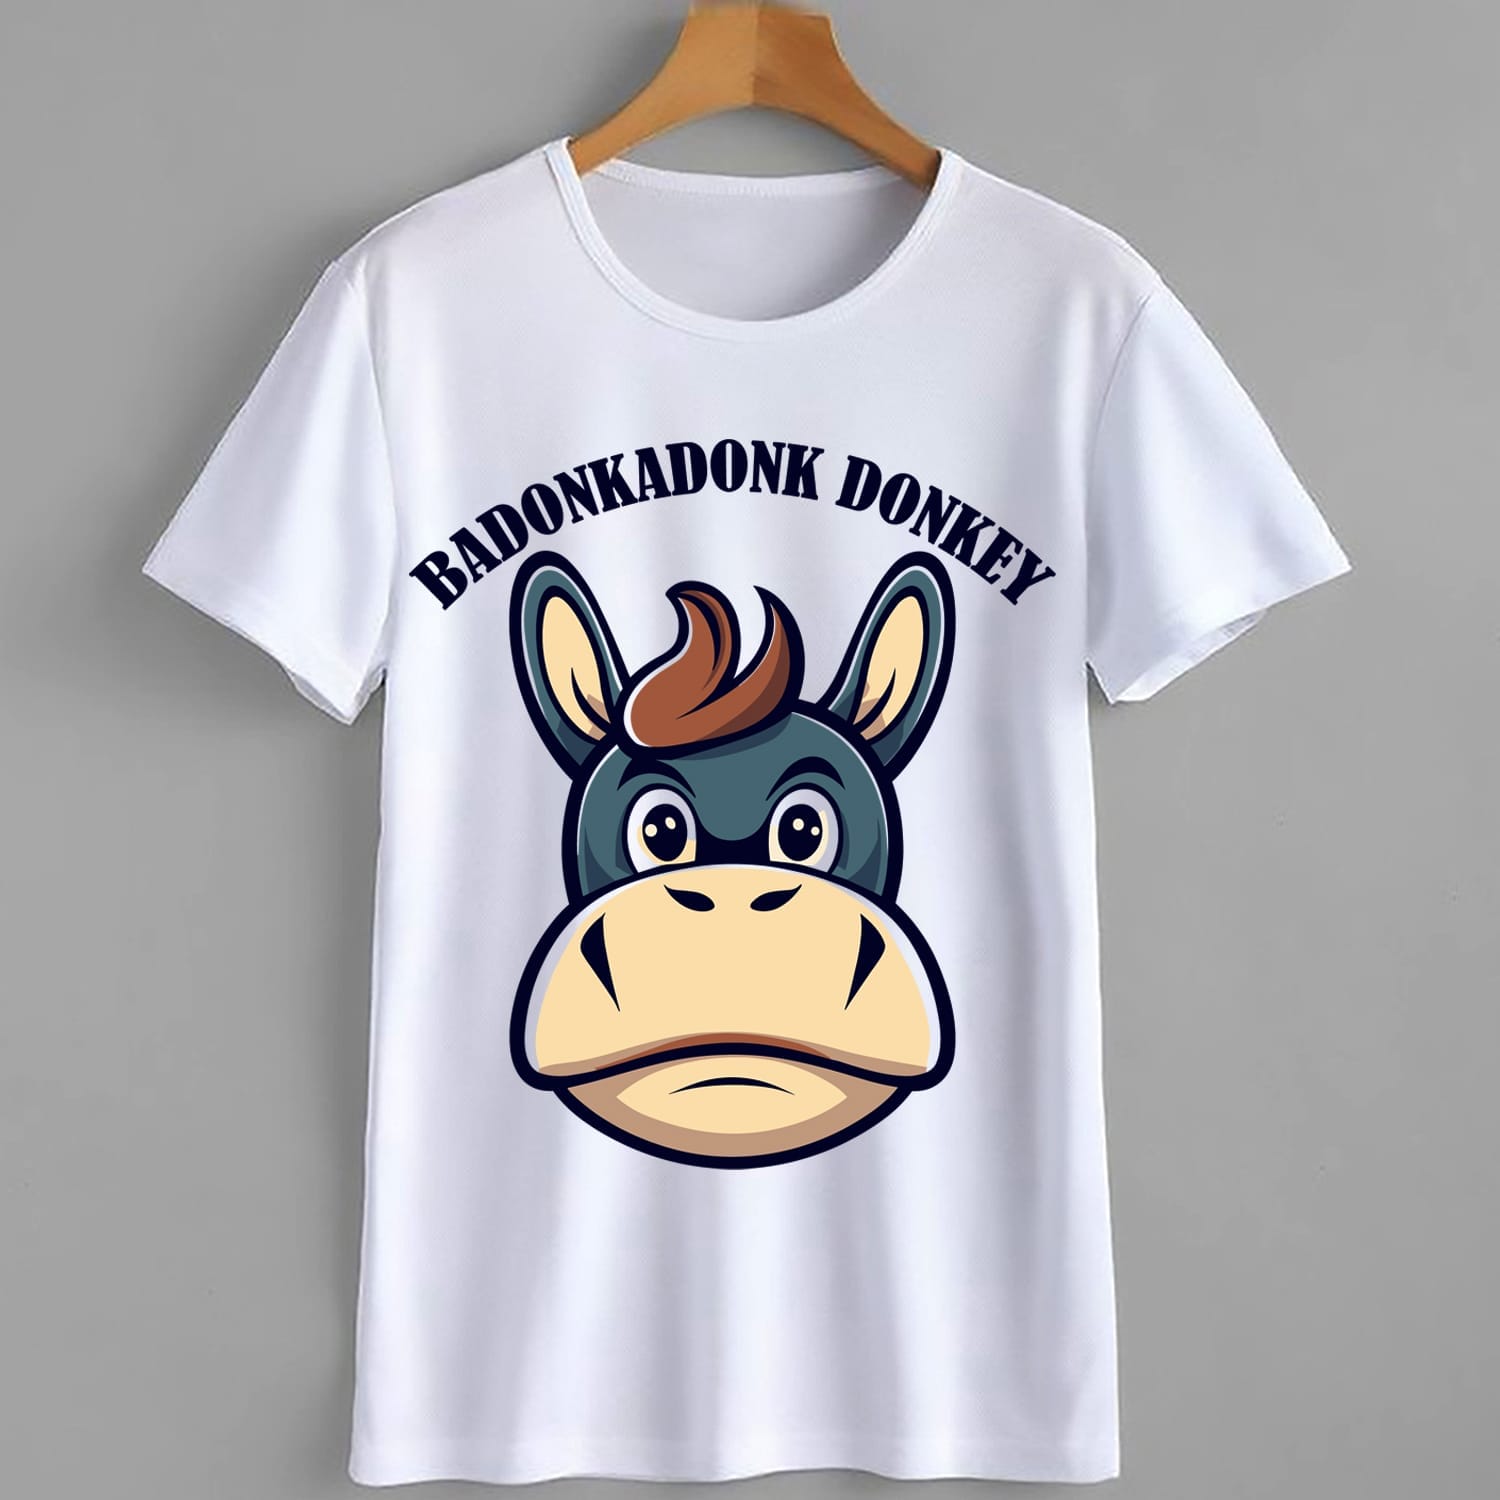 Badonkadonk Donkey Funny T-Shirt Design